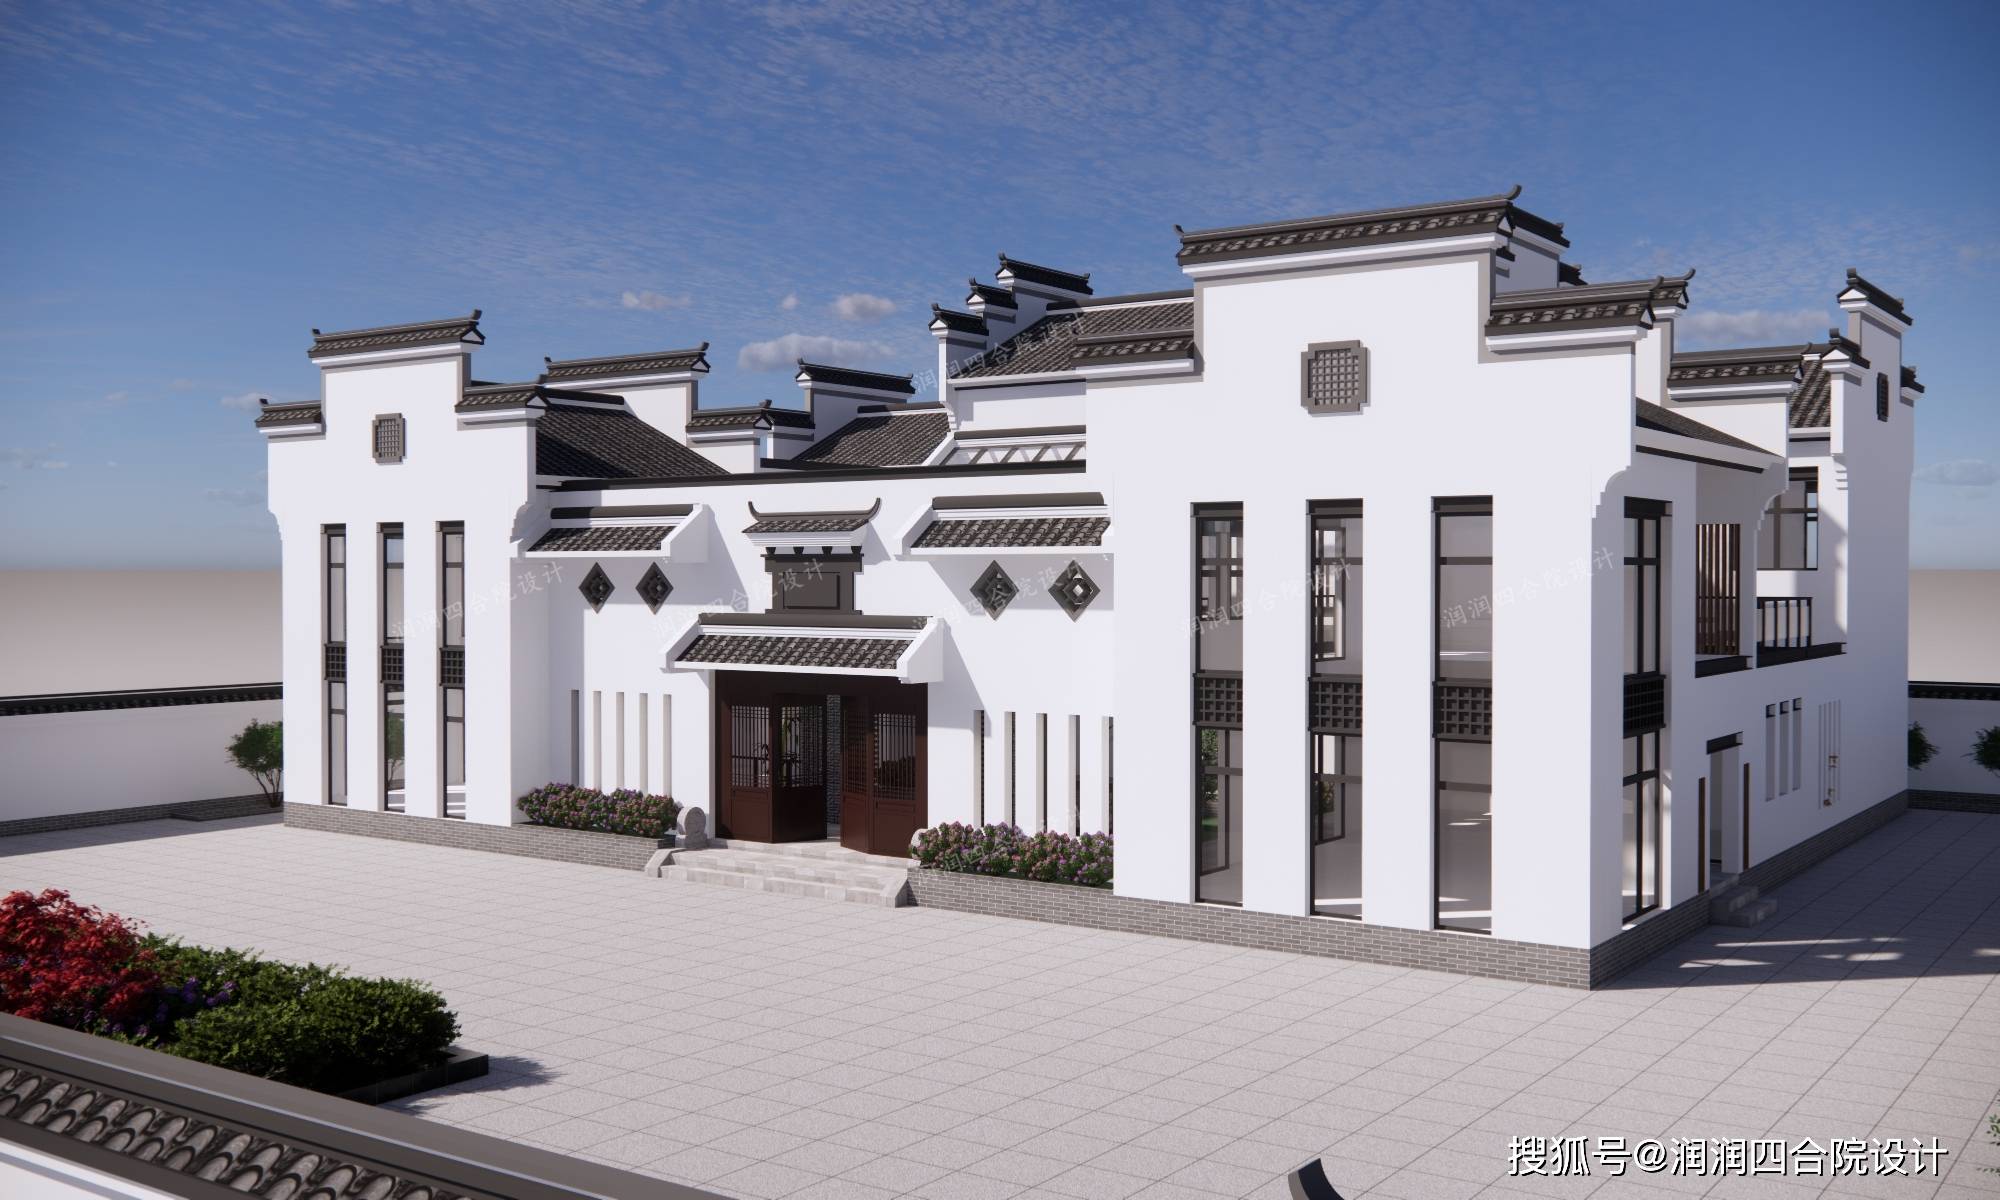 QH1013中国风徽派一层中式合院简约四合院别墅设计图纸农村小院自建房 - 青禾乡墅科技